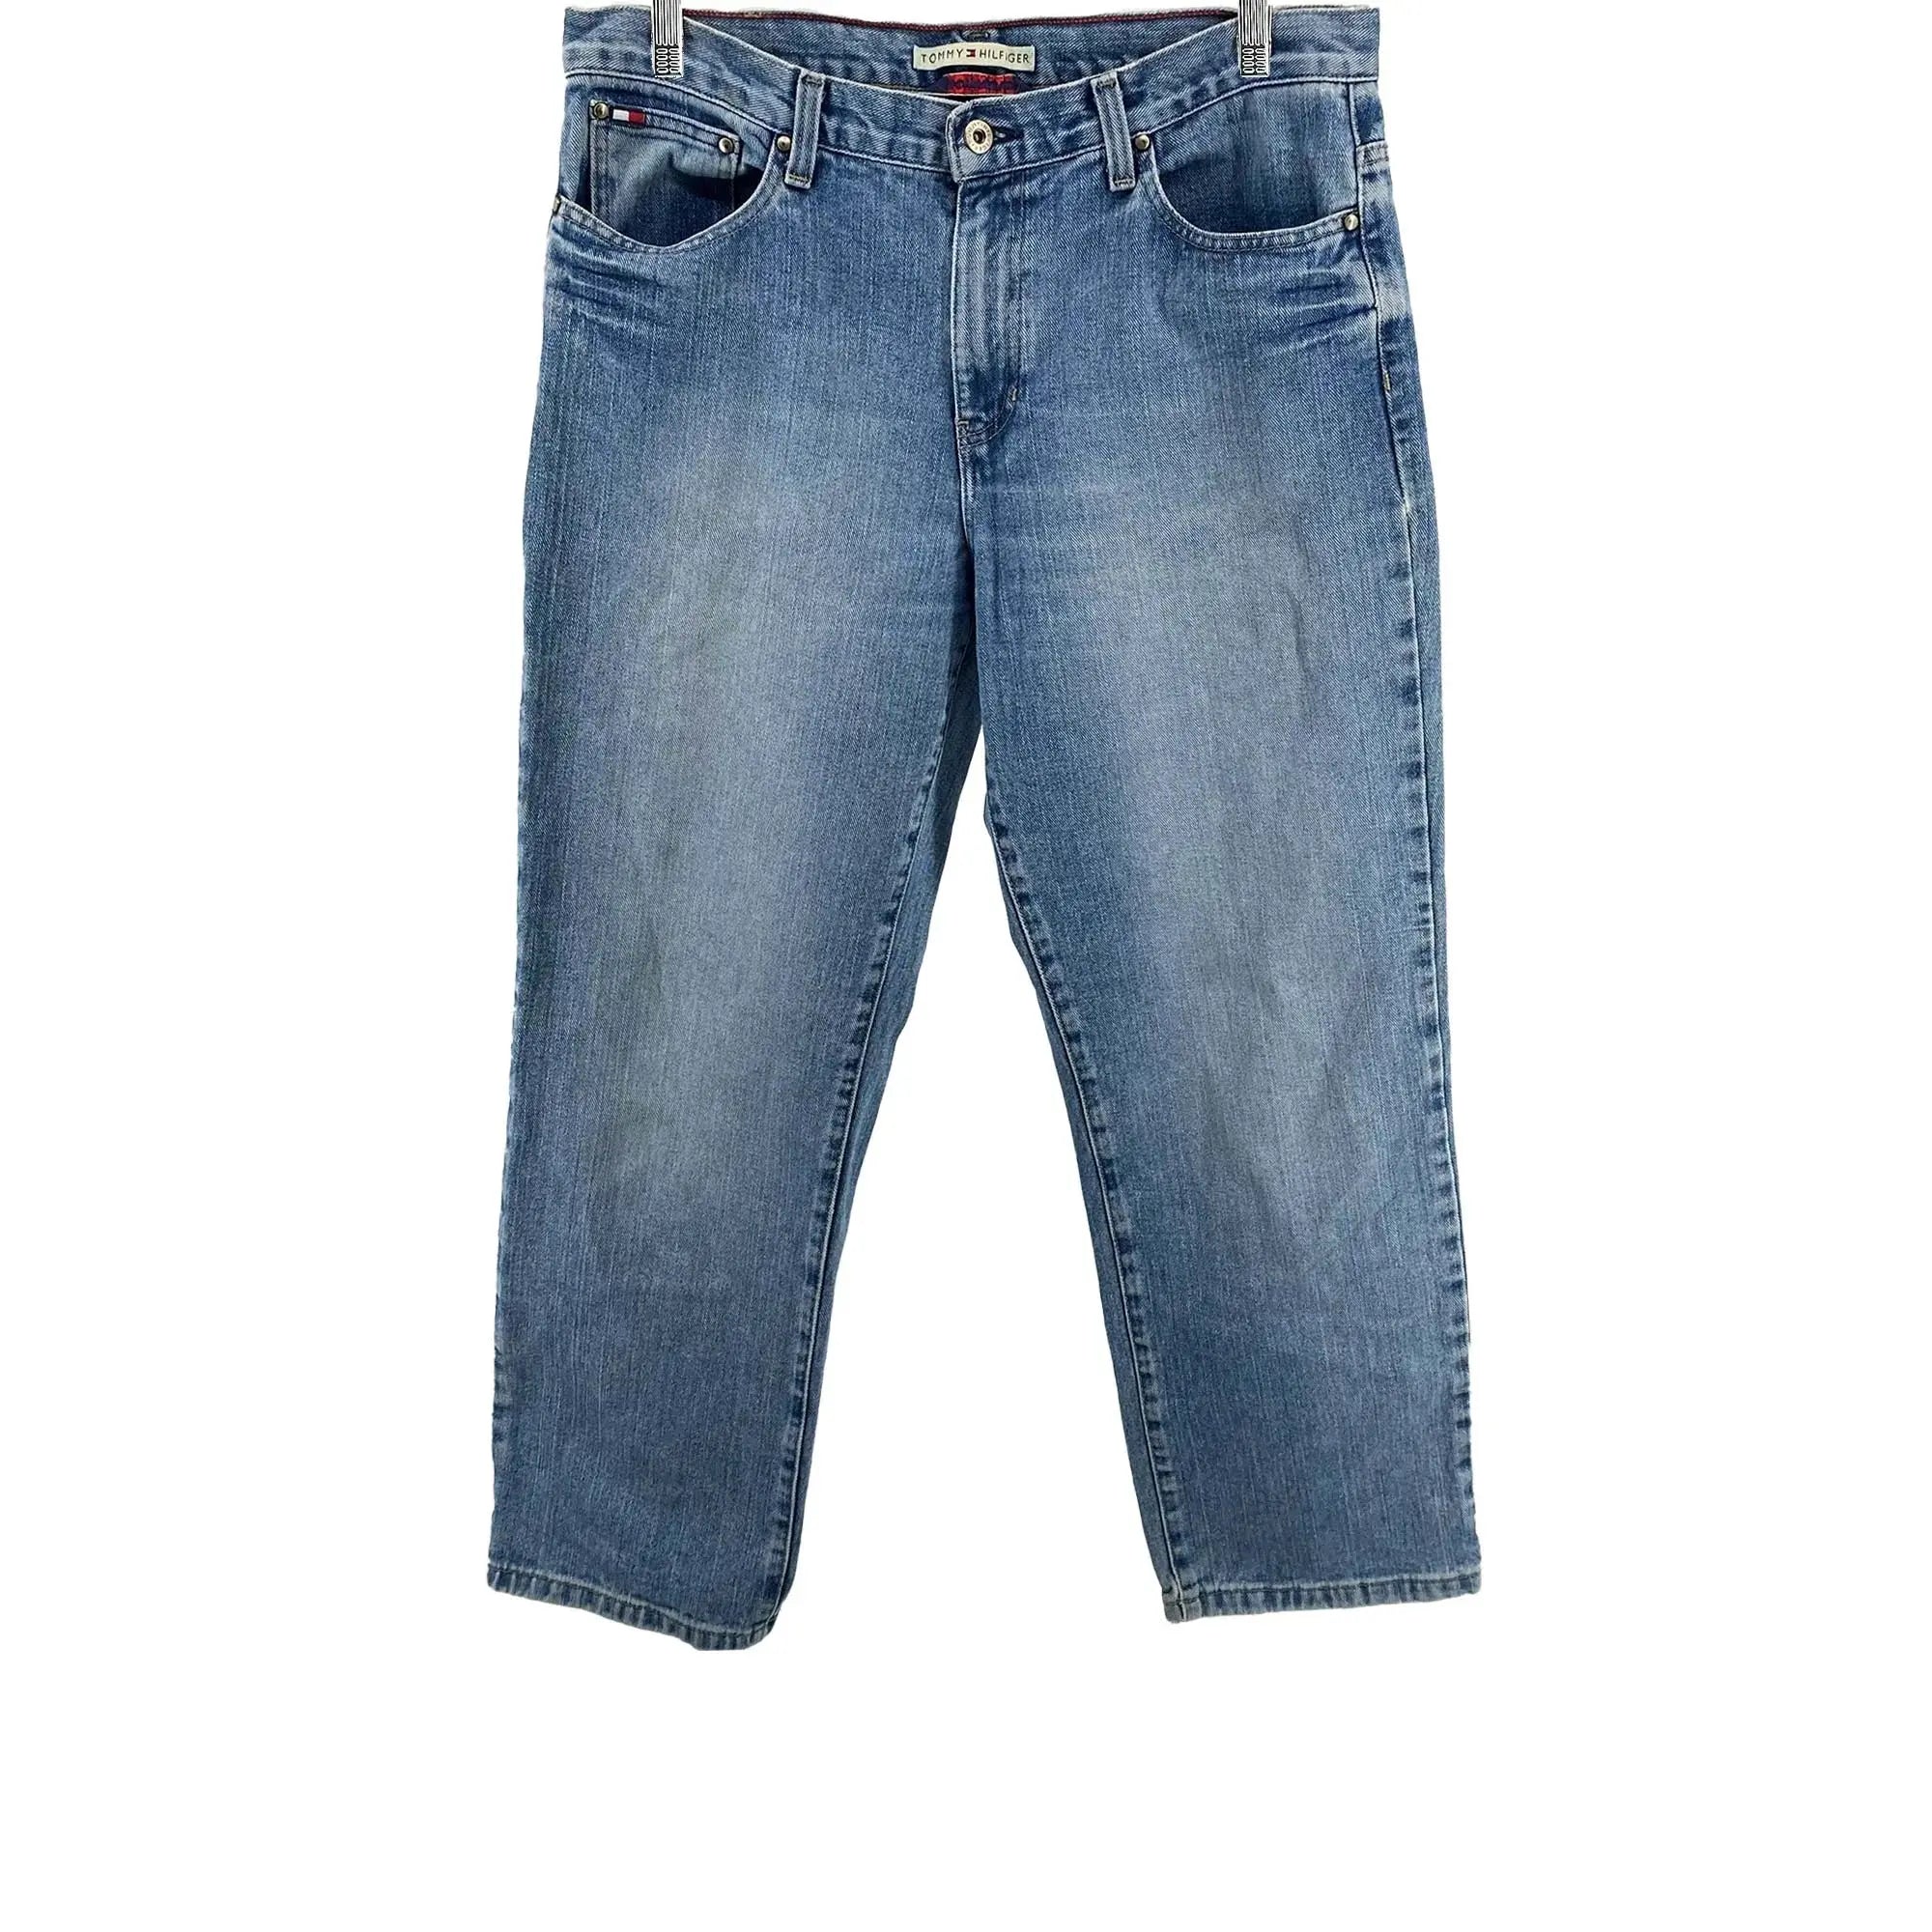 Tommy Hilfiger Boyfriend Jeans - Women's 12 (32x28) Great Lakes Reclaimed Denim